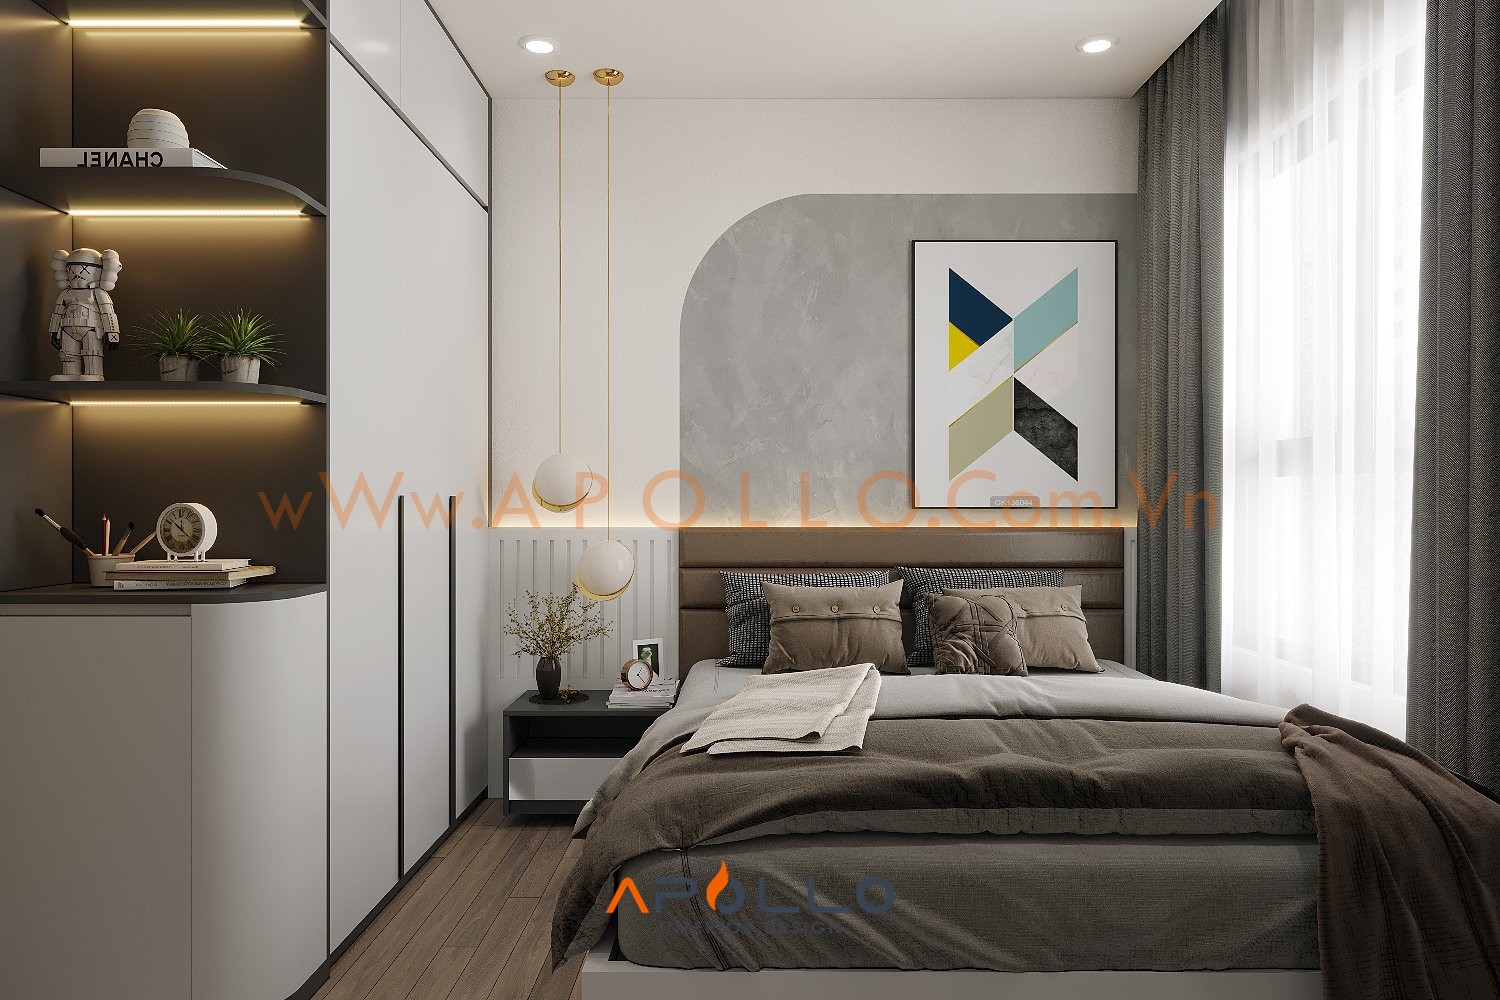 Thiết kế nội thất căn hộ 3PN Tòa GS2 Vinhomes Smart City